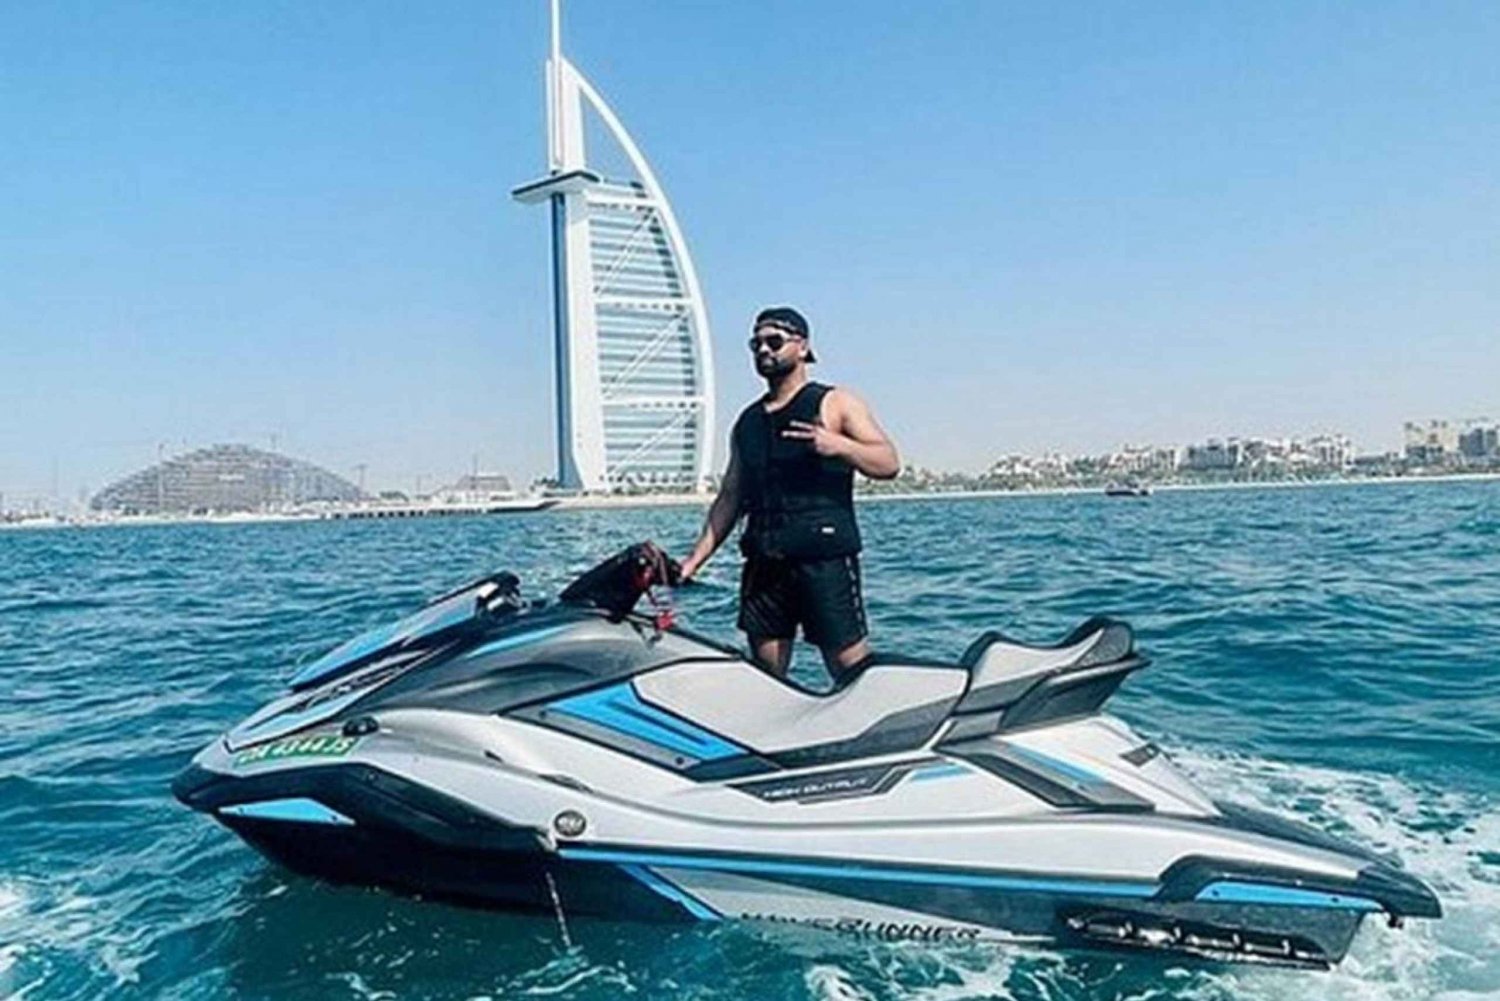 Spannende rit met jetski in Dubai op Jumeirah Beach voor 2